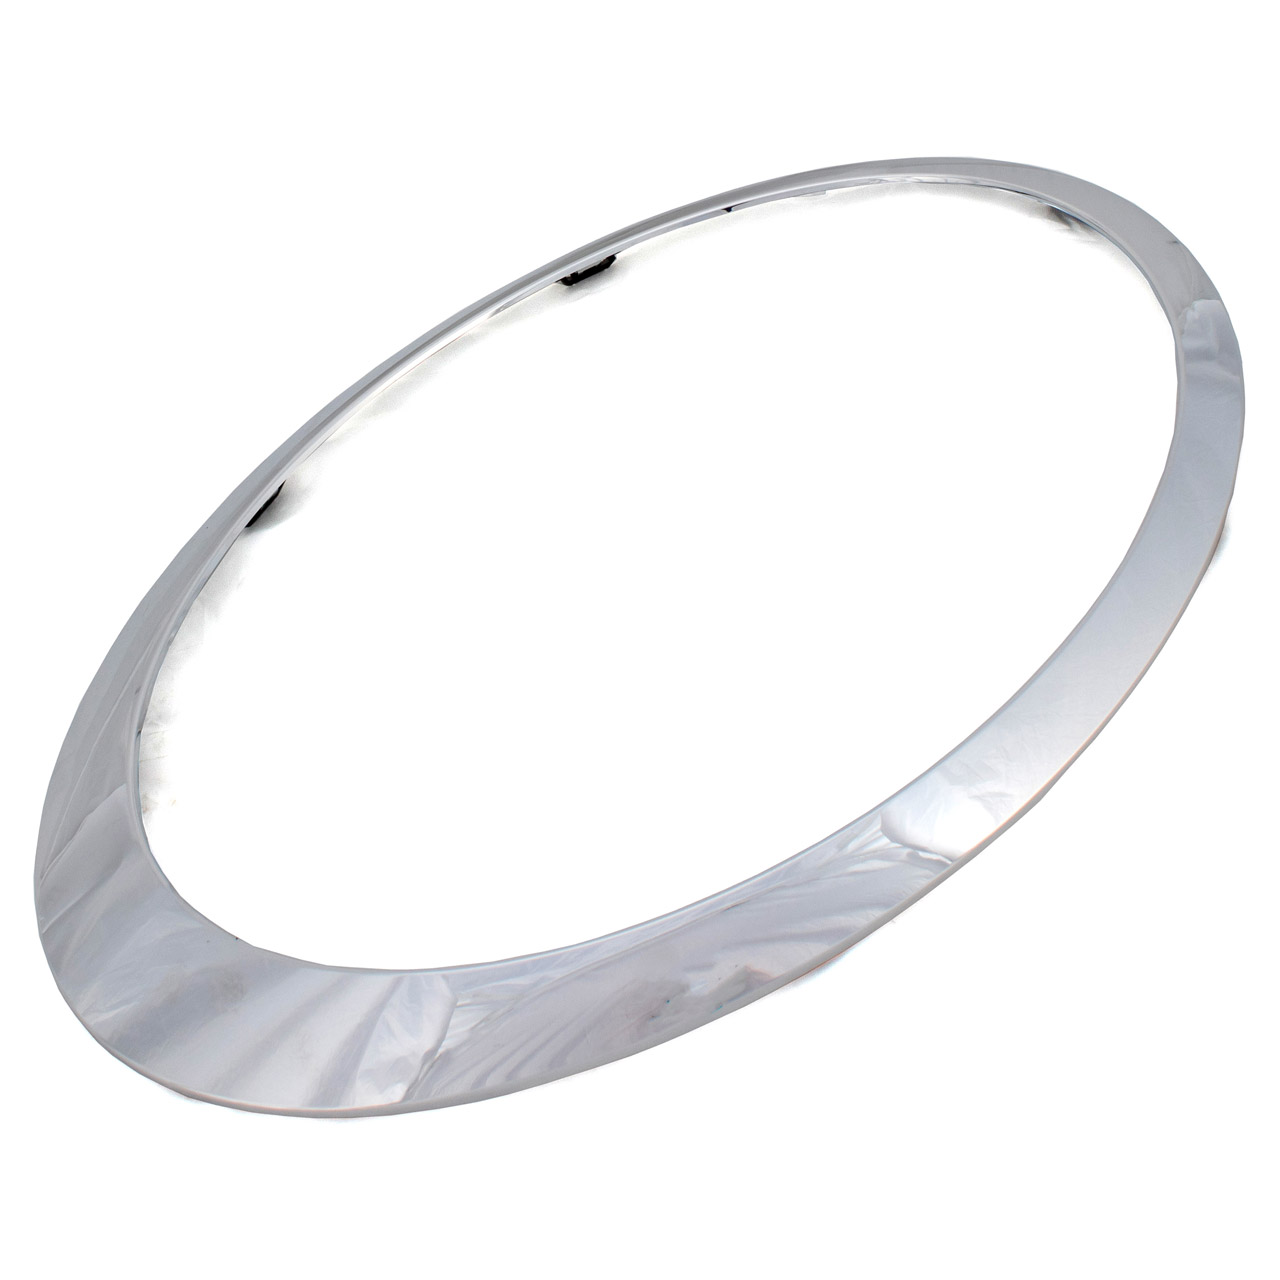 FÜR MINI COOPER R55 R56 R57 R58 R59 Scheinwerfer Zierring Ring Blende  2007-2015 EUR 35,66 - PicClick DE